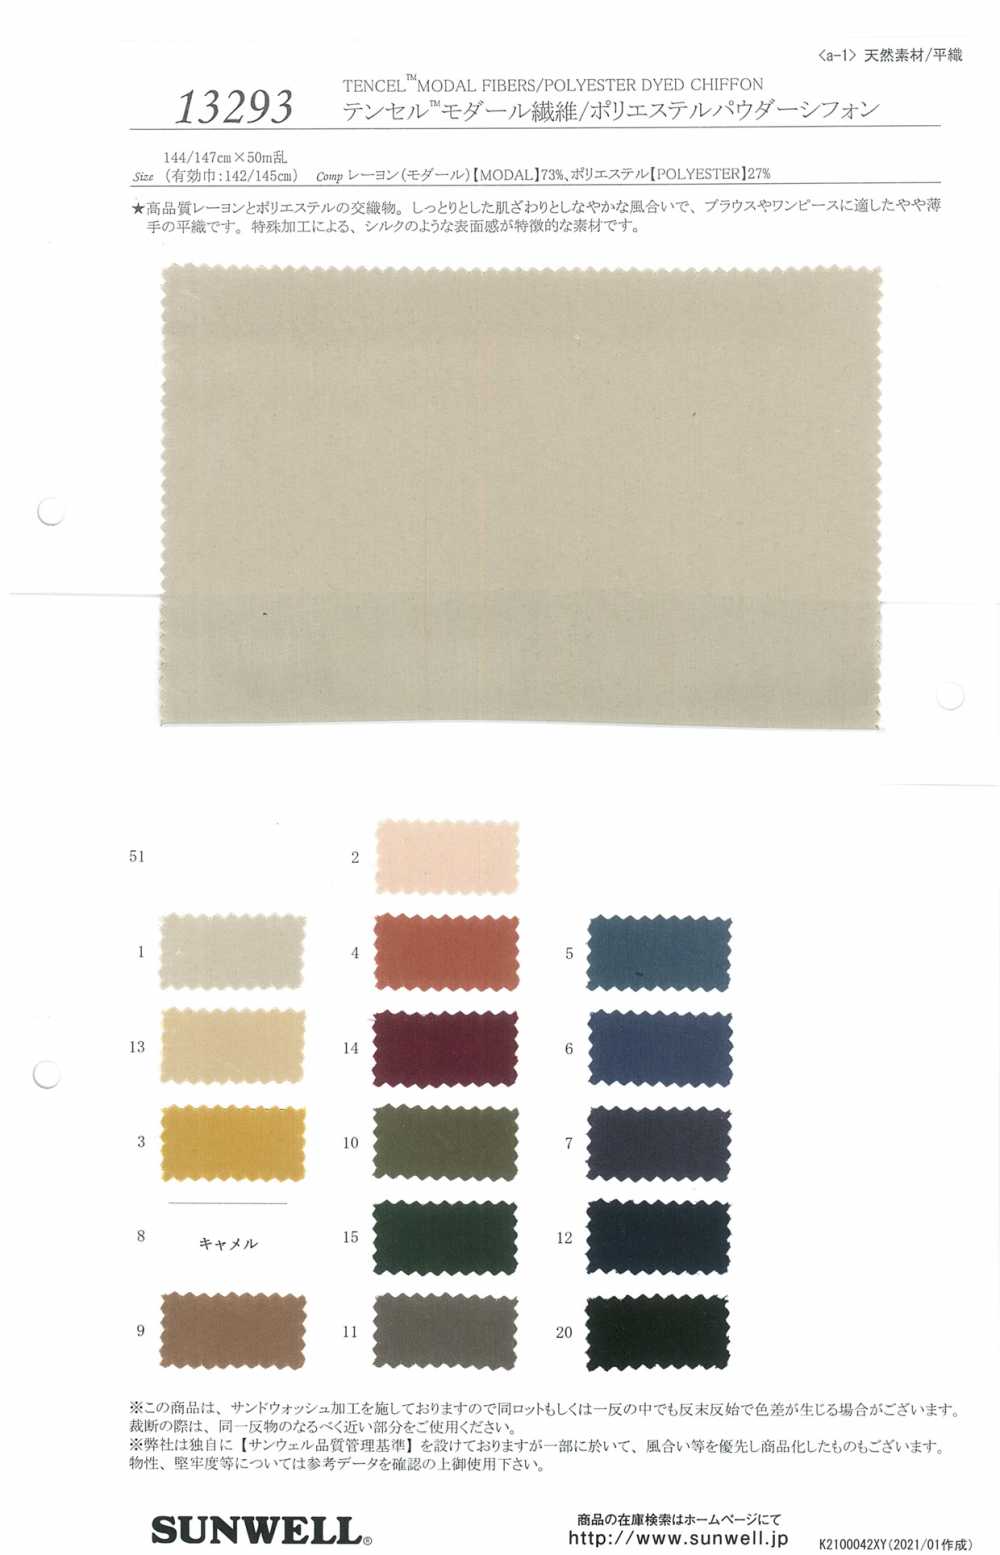 13293 Tencel (TM) Fibre Modale / Mousseline De Polyester En Poudre[Fabrication De Textile] SUNWELL